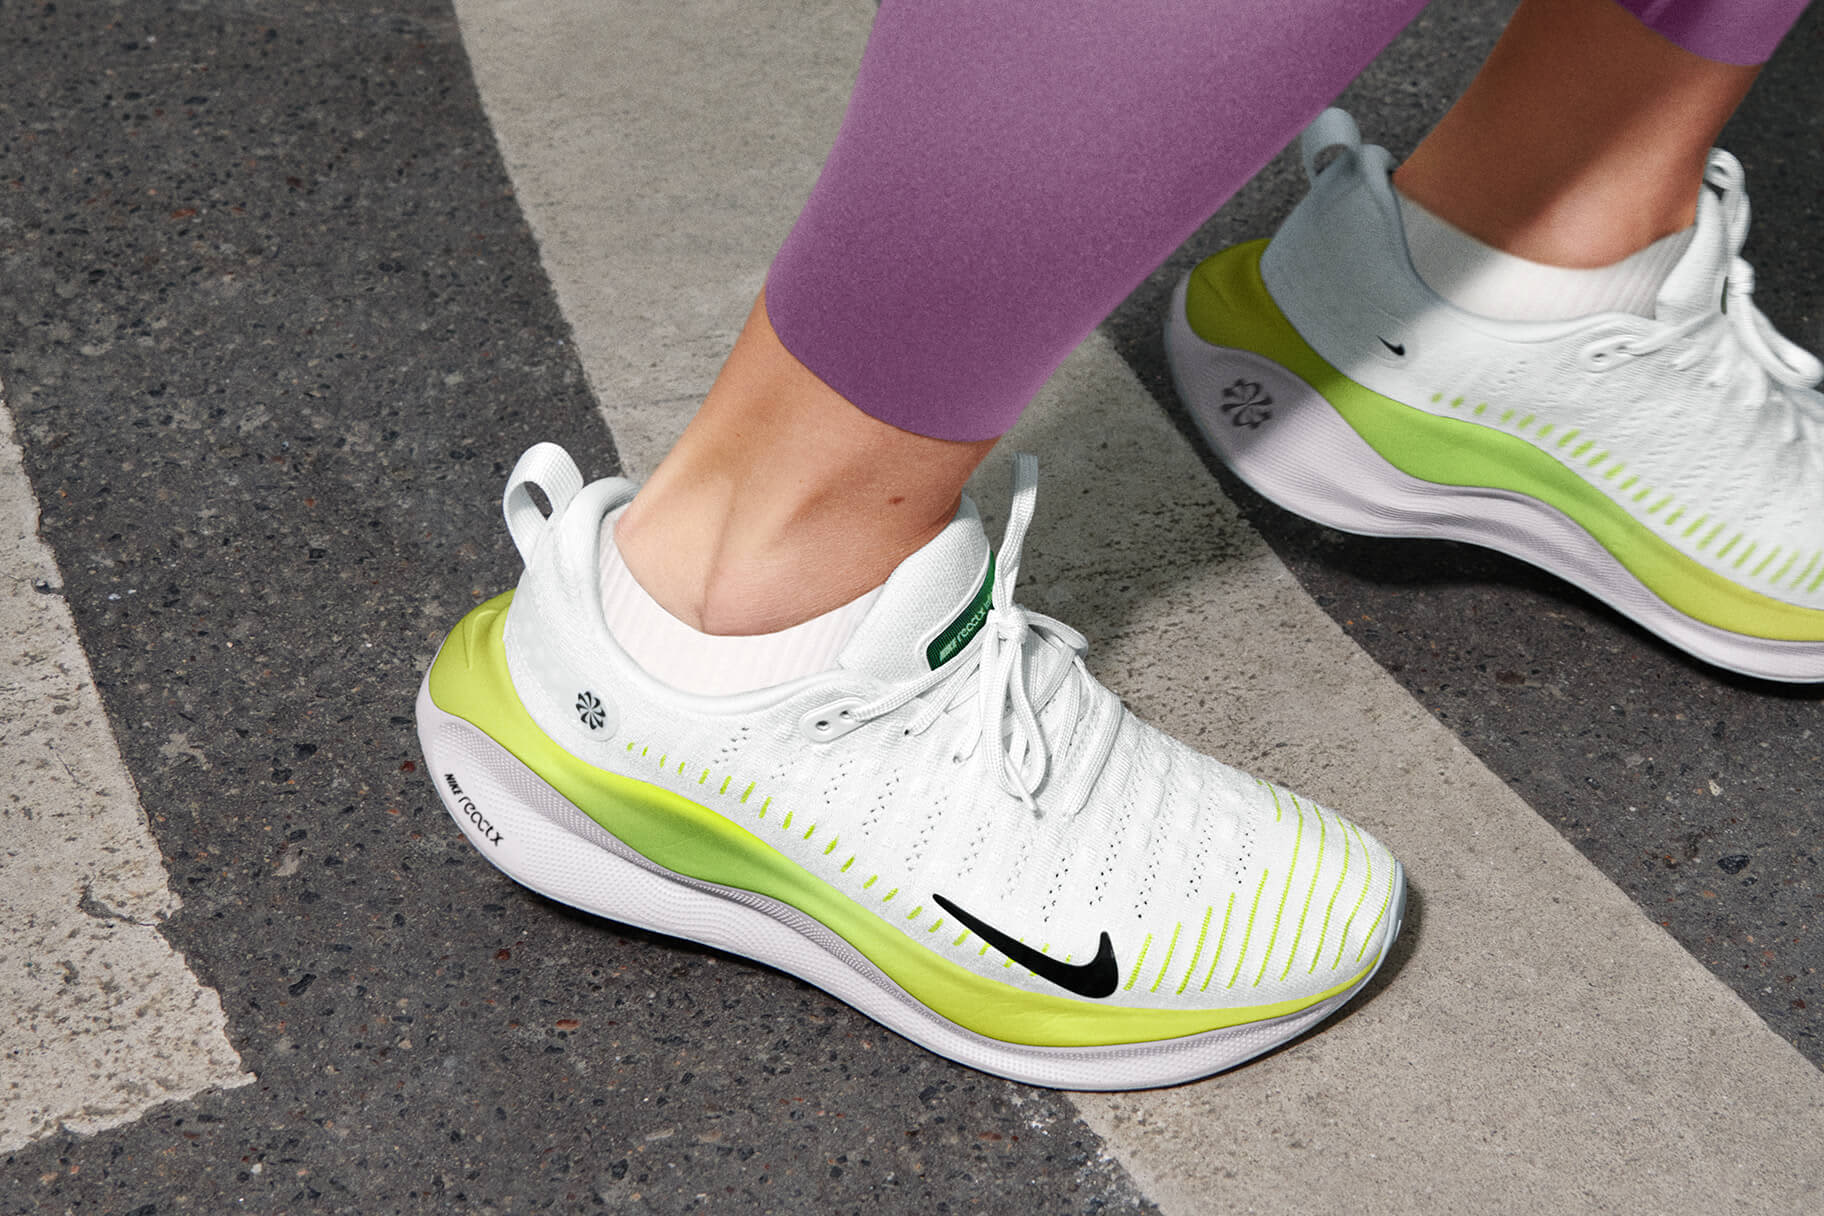 Die neue ReactX-Technologie von Nike optimiert die Energierückgabe und verringert den CO2-Fußabdruck